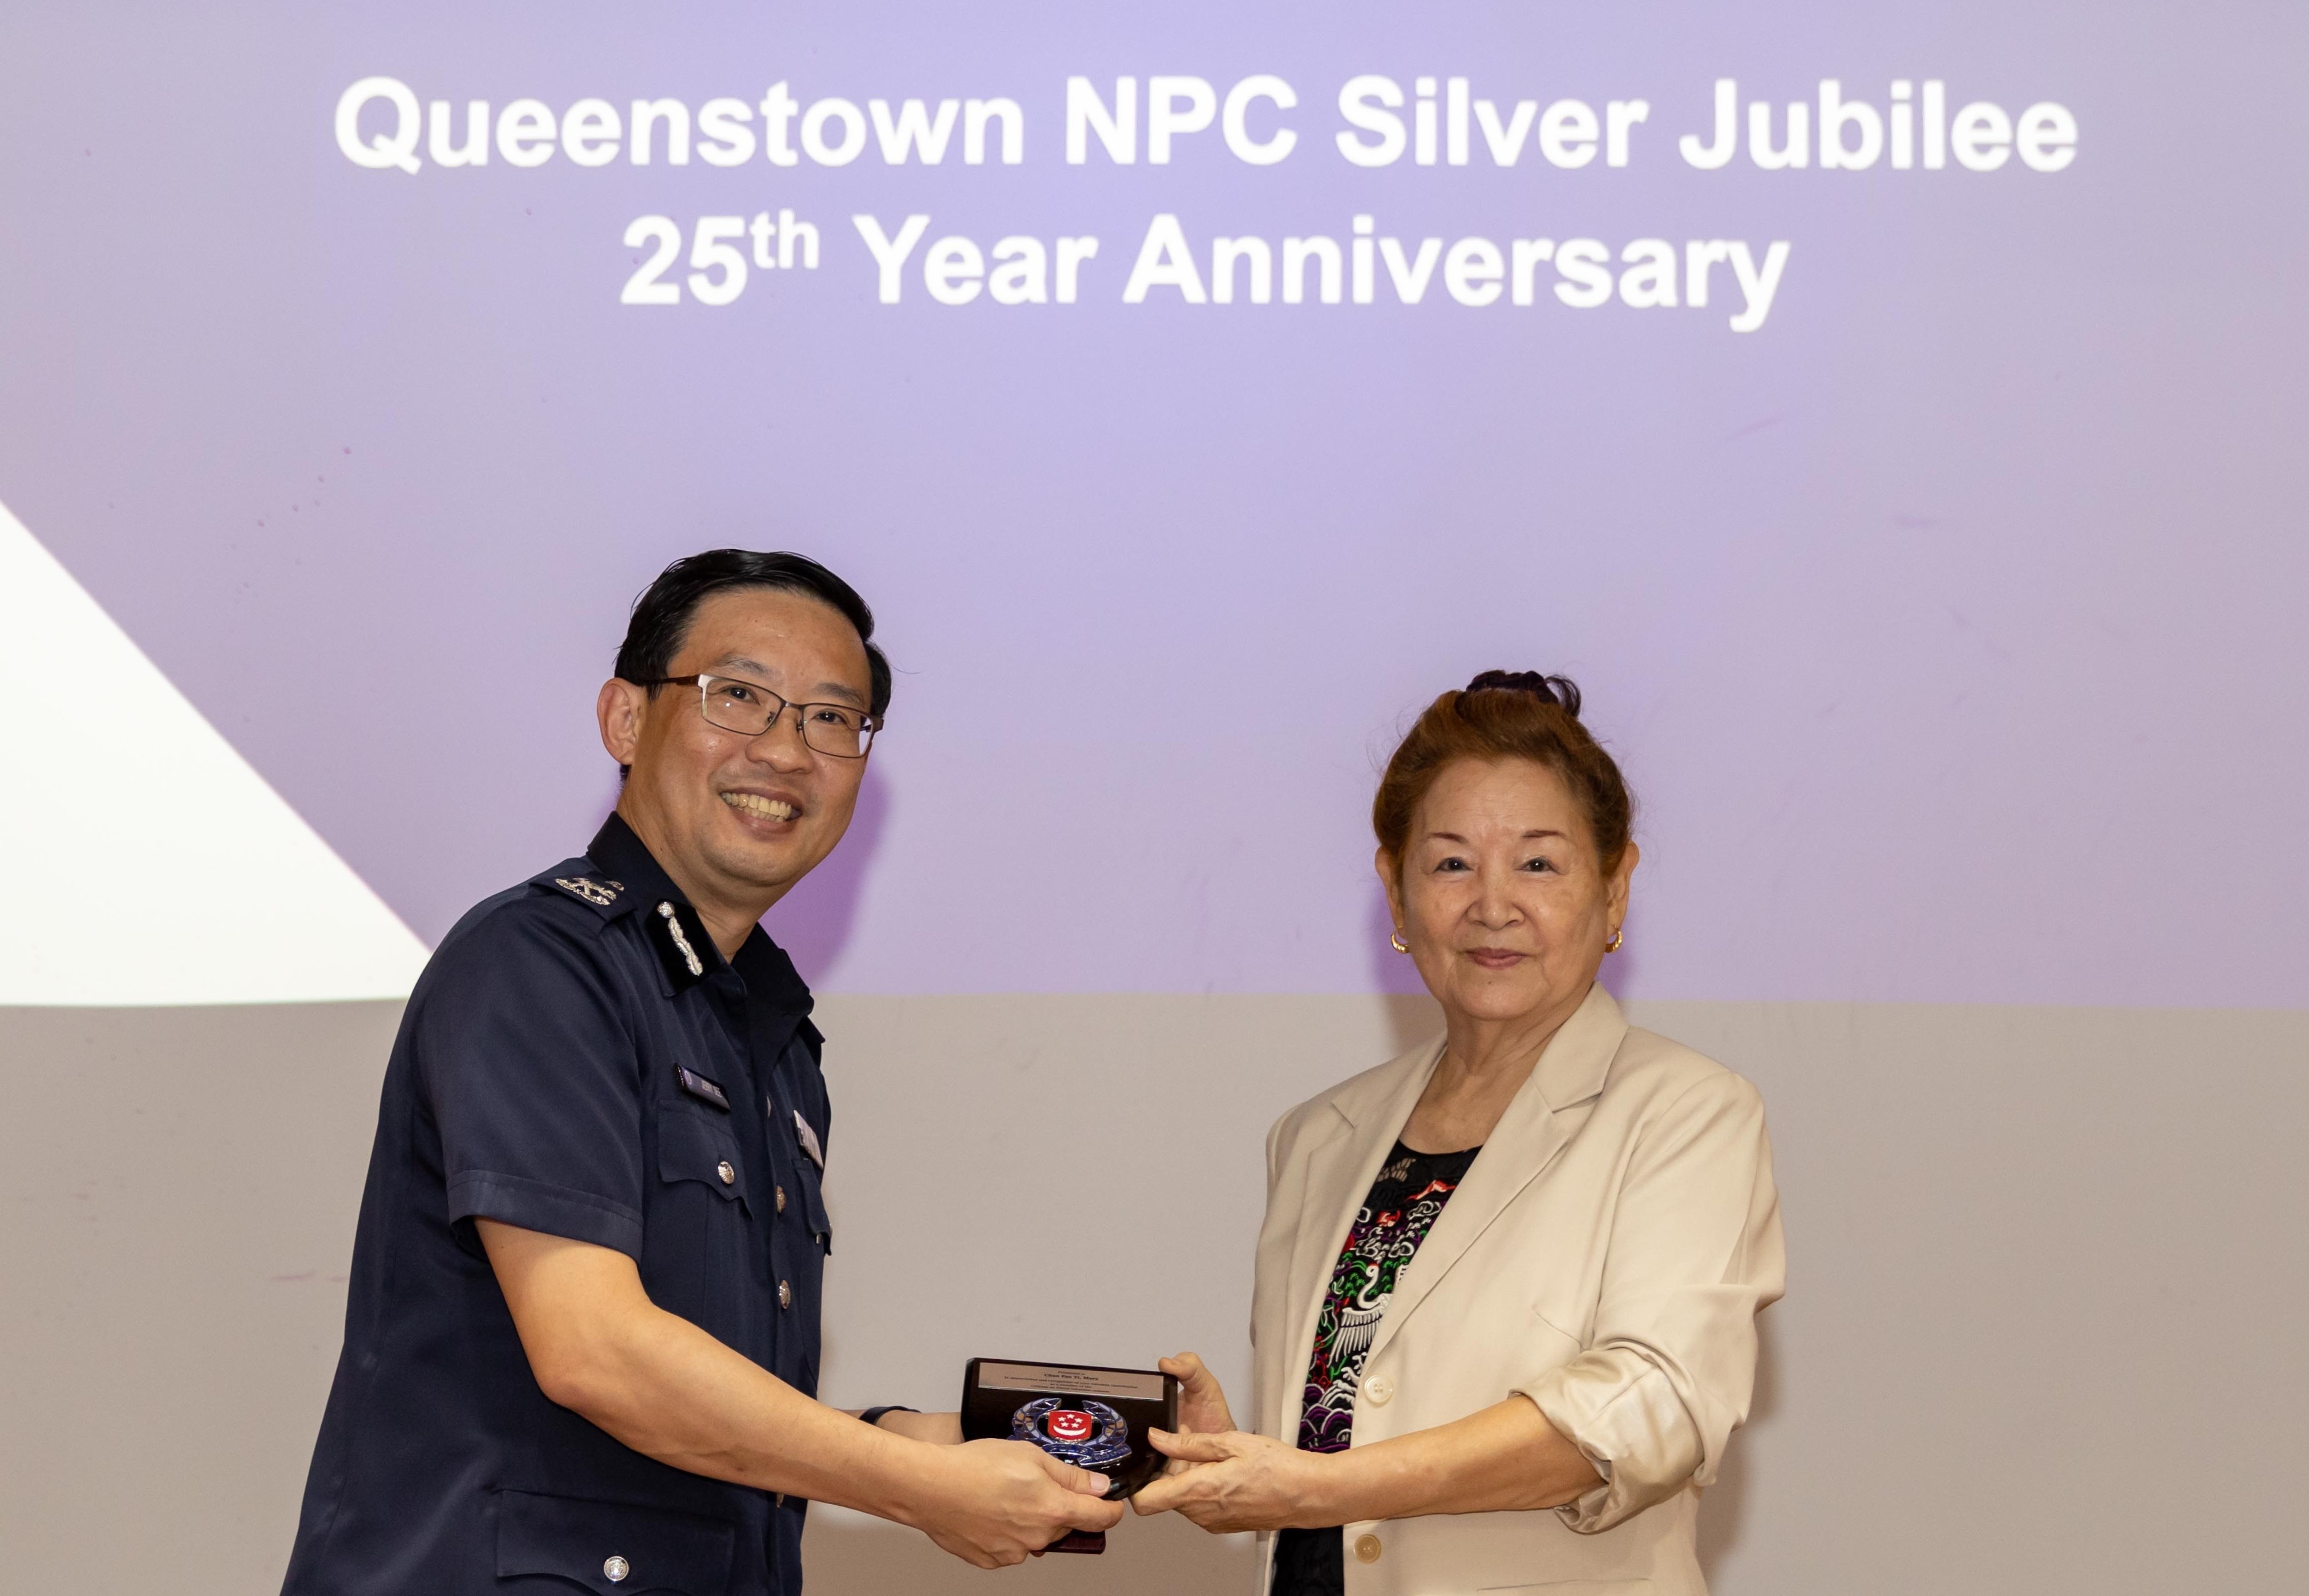 20221220_silver_jubilee_25th_year_celebrations_of_spf_pioneer_npc_queenstown_npc_1